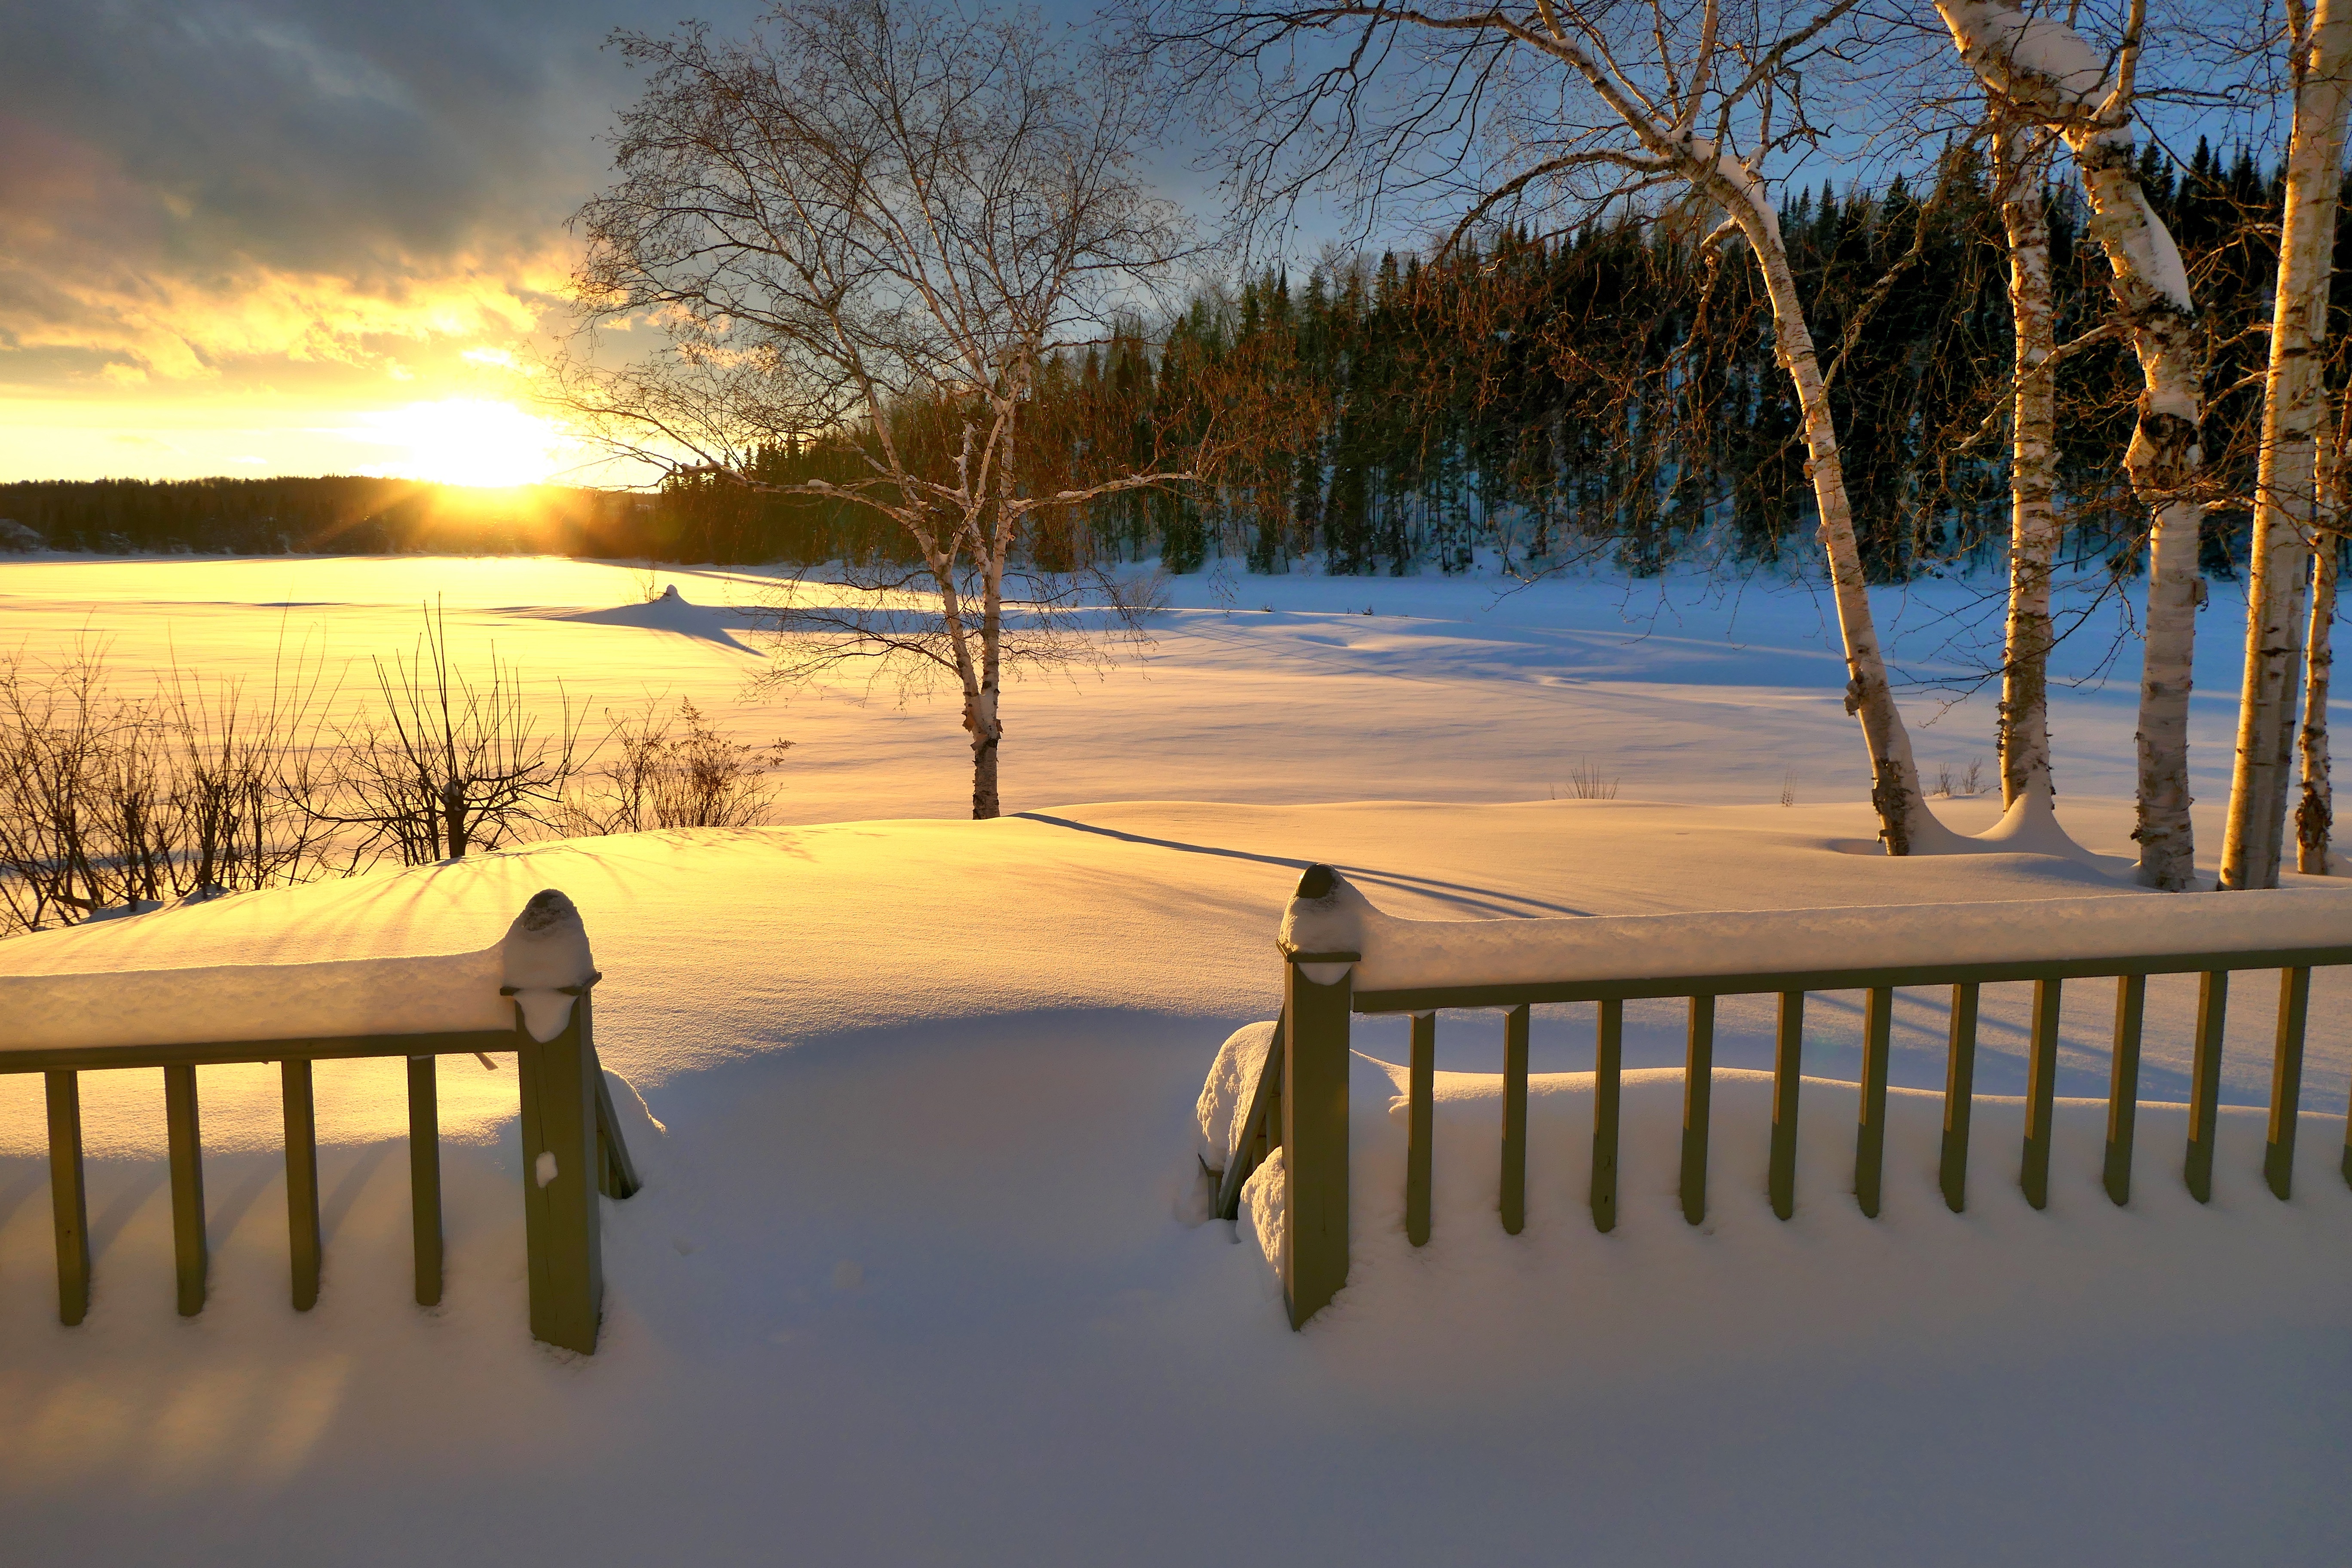 928919 免費下載壁紙 摄影, 冬季, 桦树, 栅栏, 魁北克, 雪, 日落 屏保和圖片